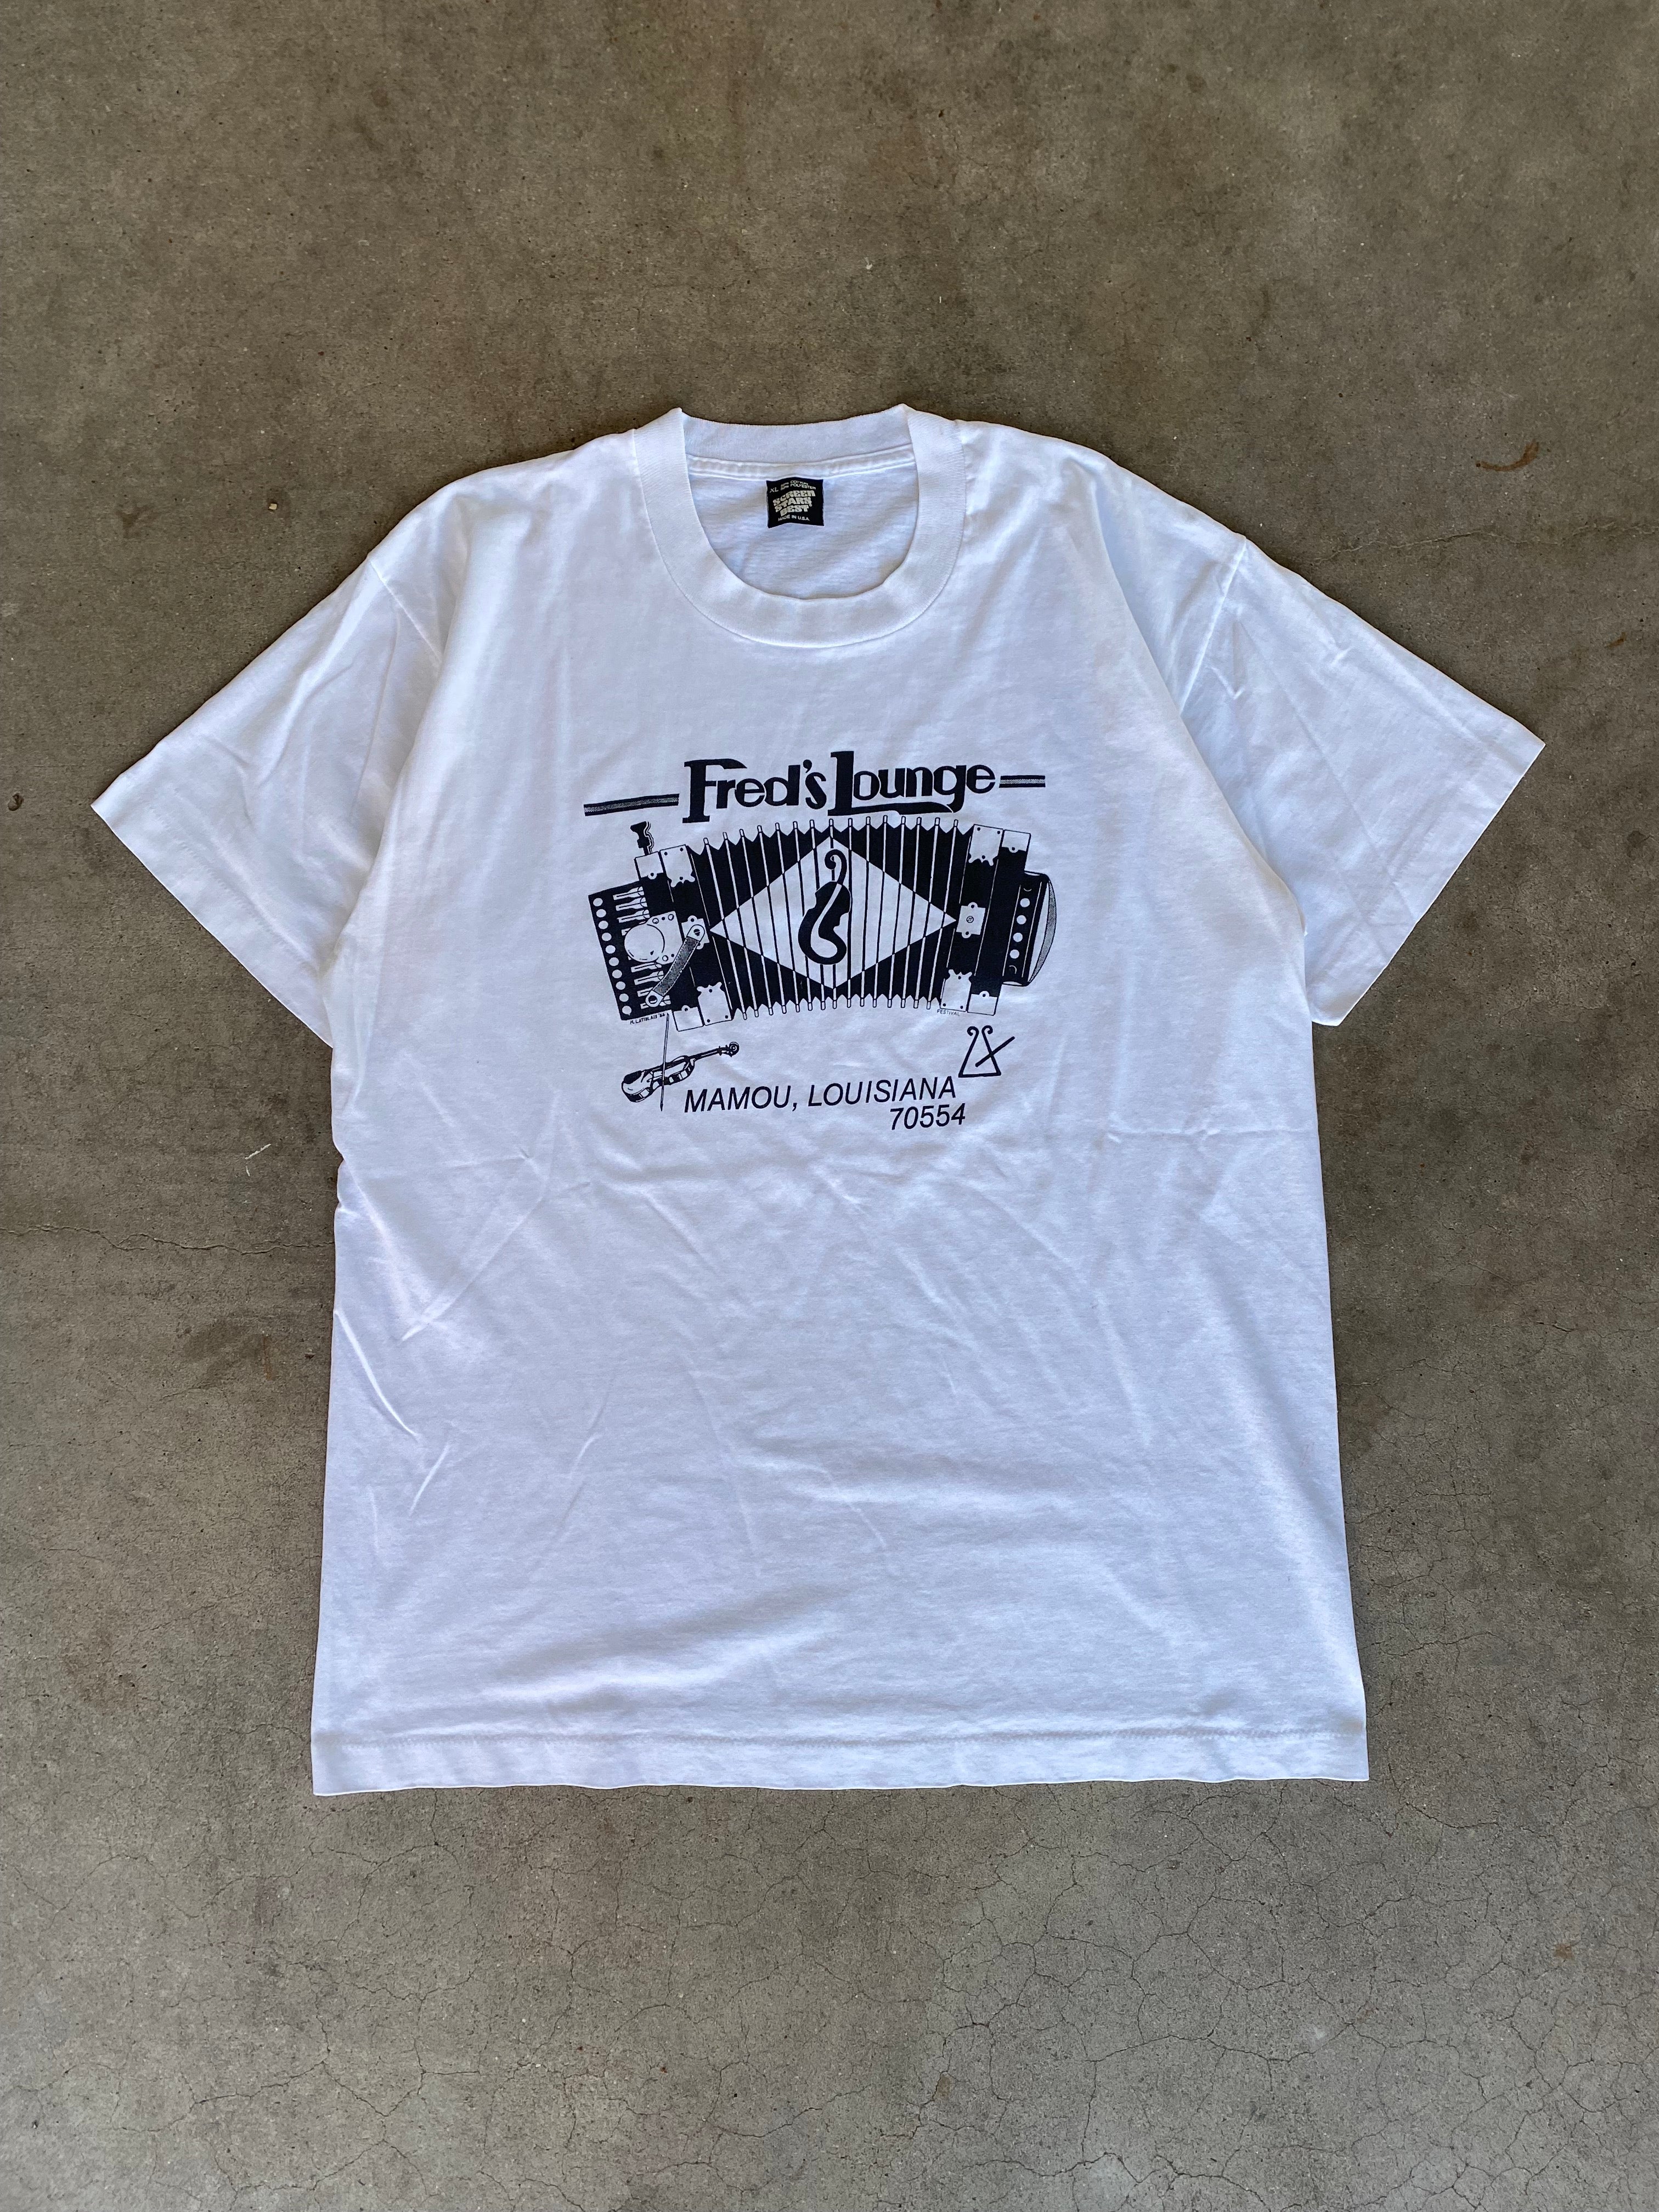 1986 Fred's Lounge Mamou Louisiana T-Shirt (L/XL)